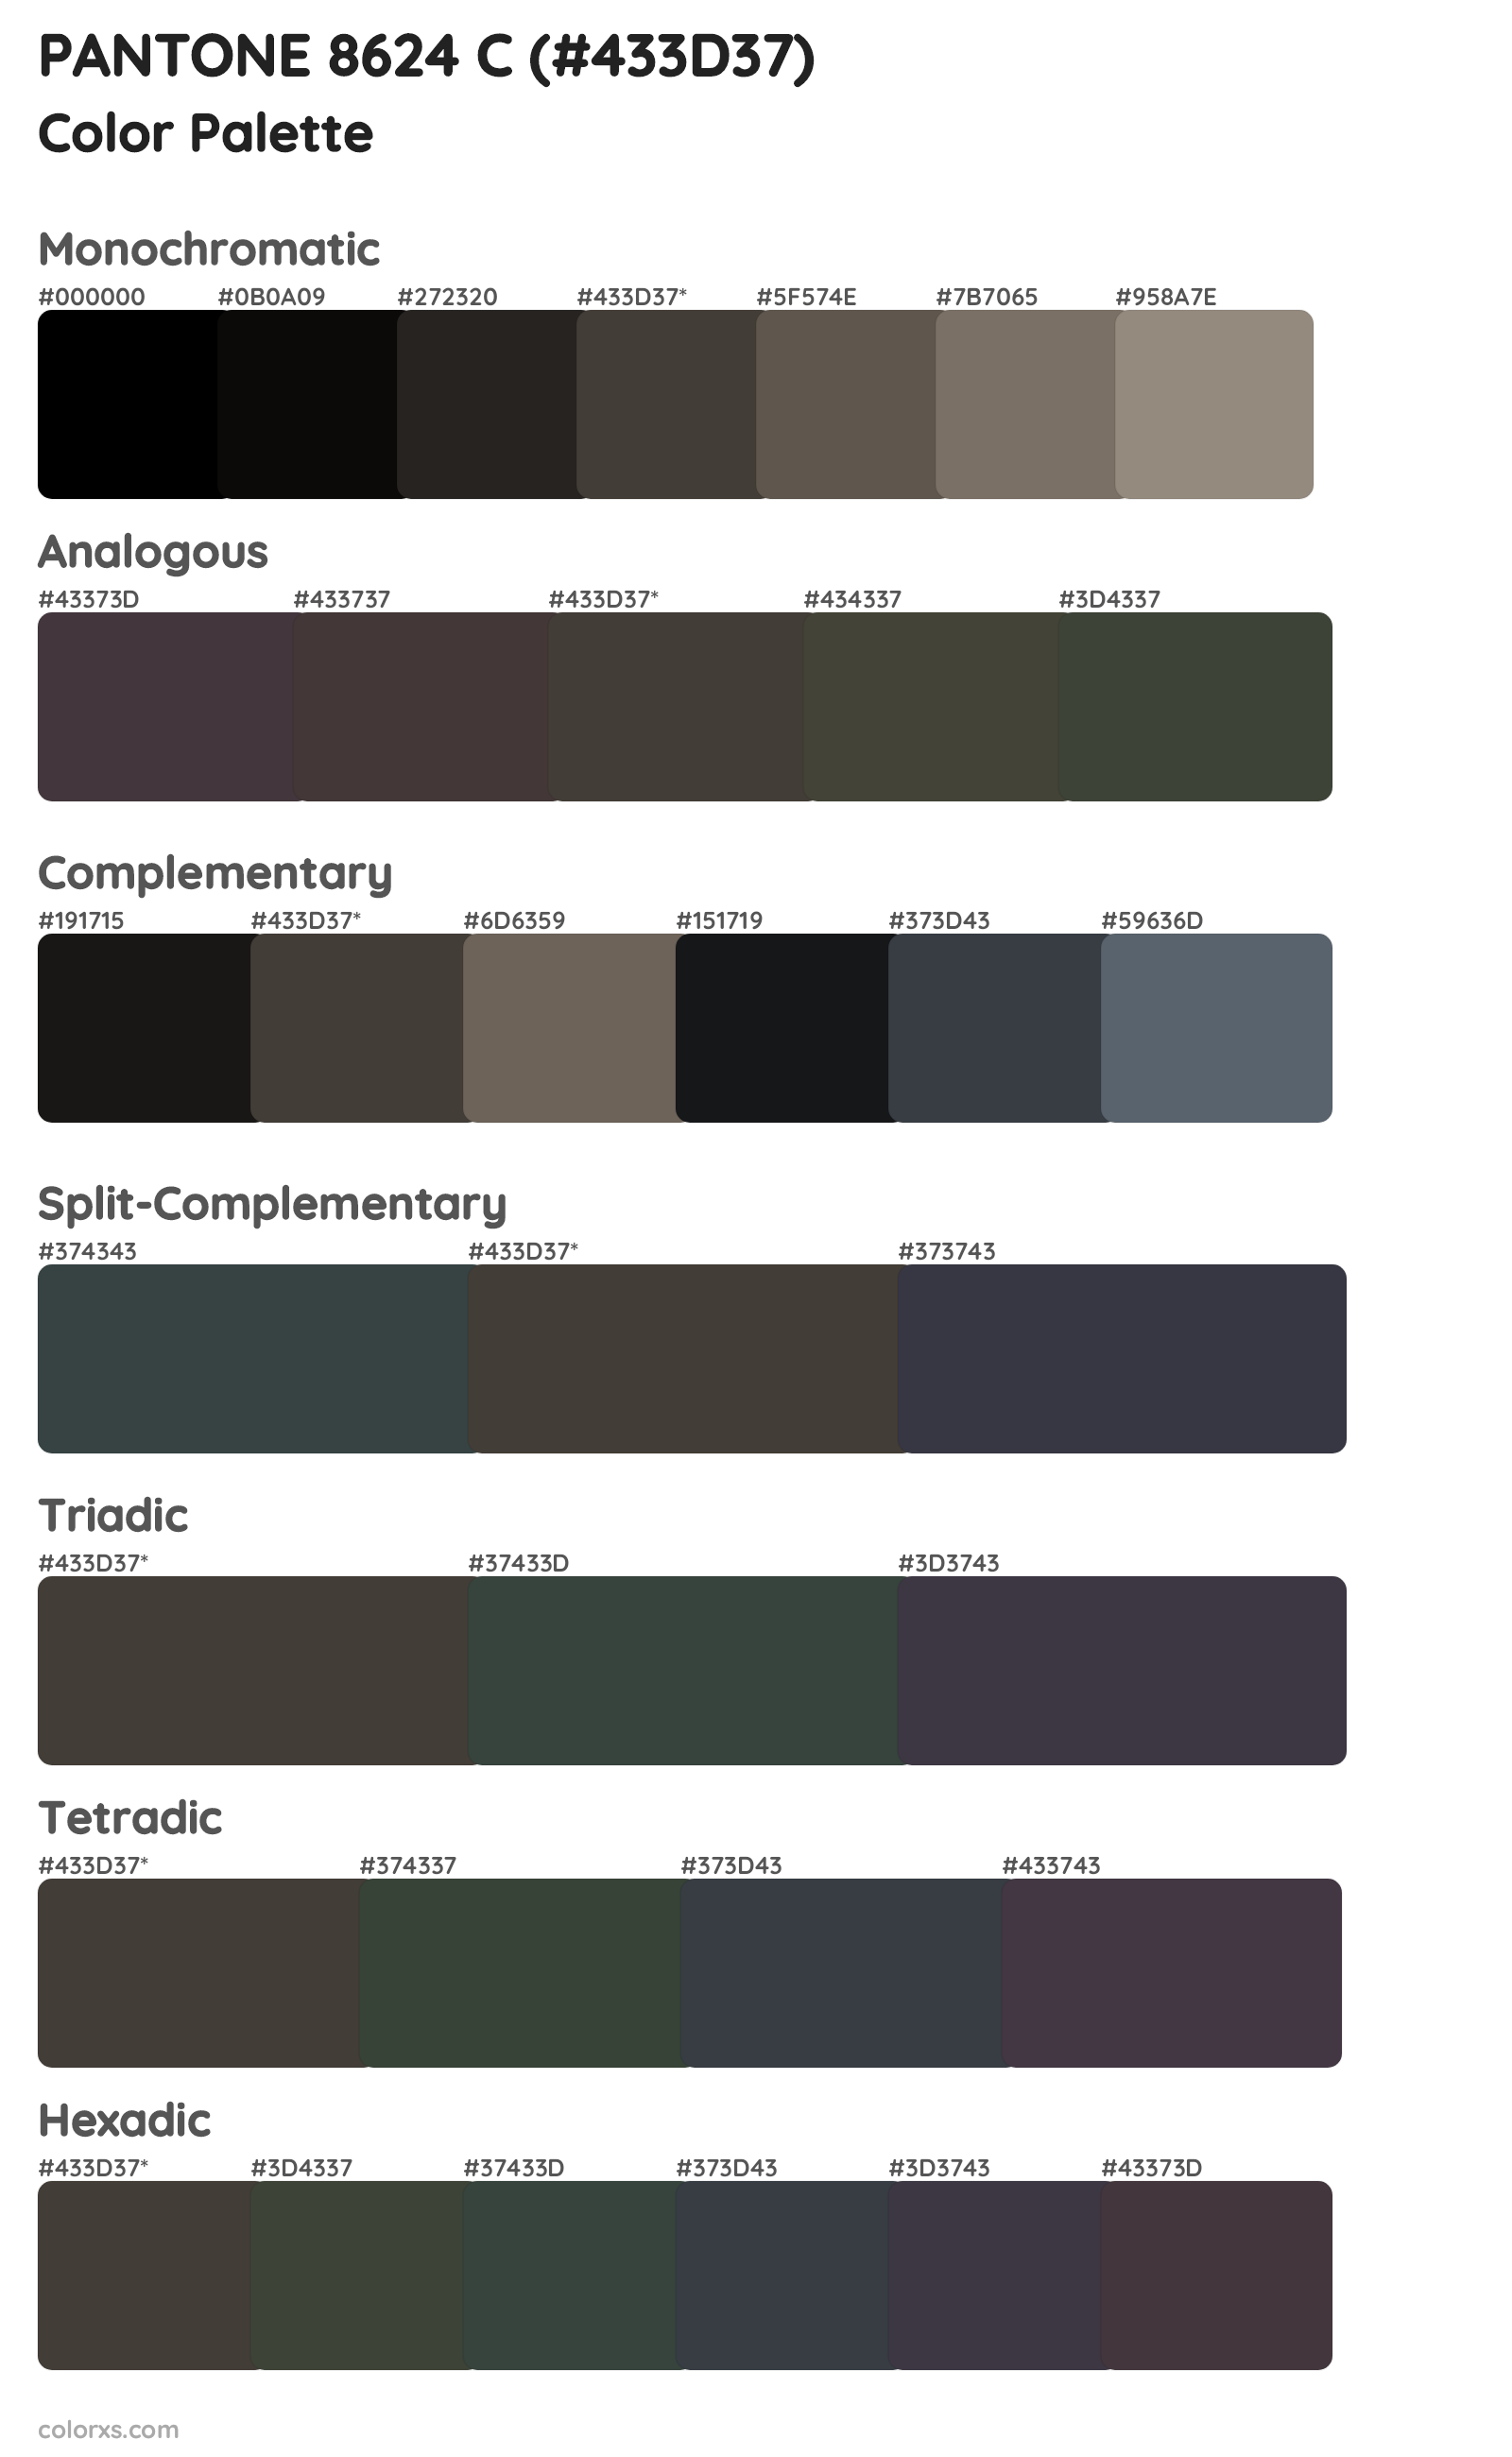 PANTONE 8624 C Color Scheme Palettes